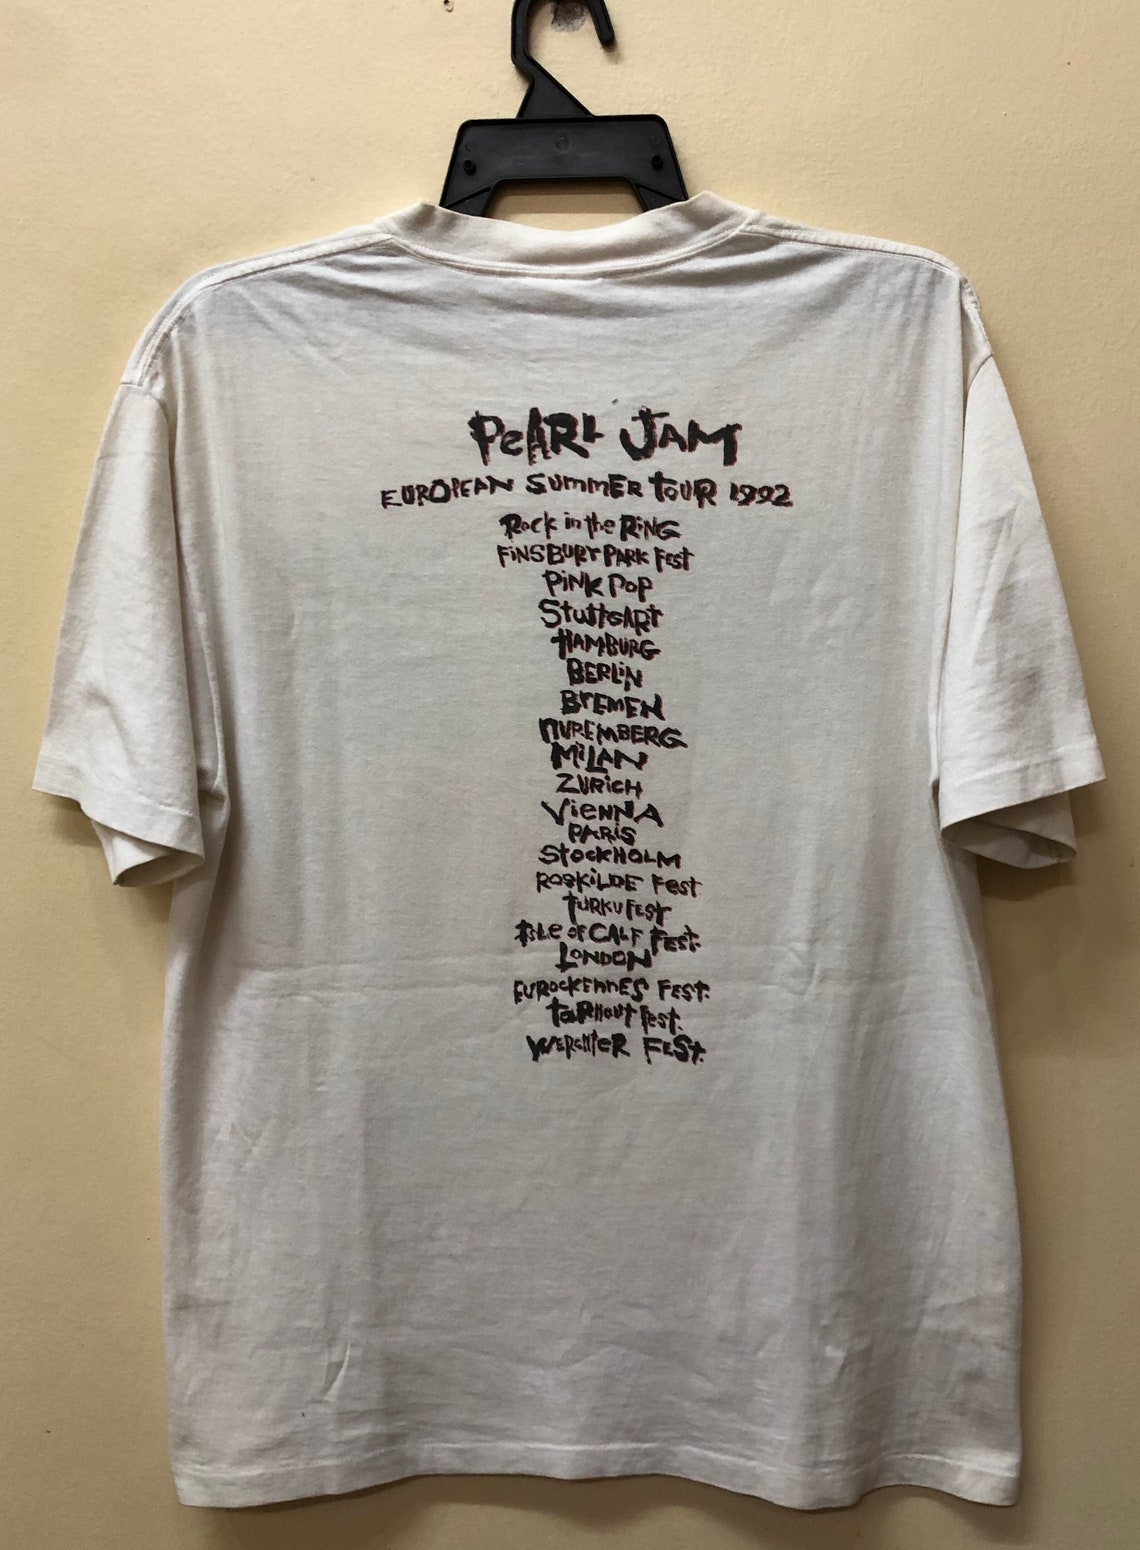 Vintage 90 Pearl Jam Europe Summer Tour 1992 T Shirt | Etsy Denmark